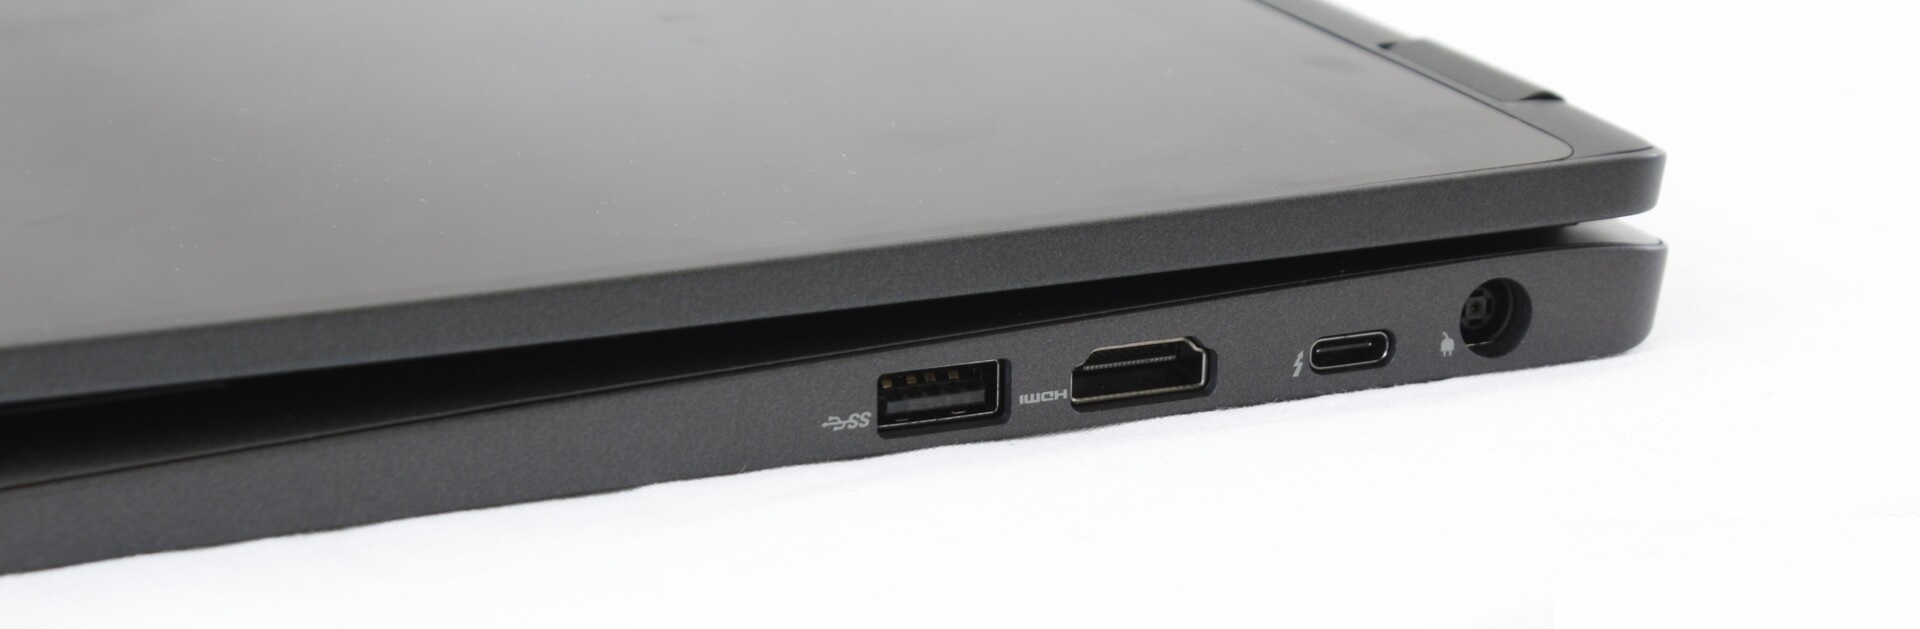 Đánh giá Dell Latitude 5300 2 trong 1: Đối thủ nặng ký trong phân khúc !, trang tư vấn laptop